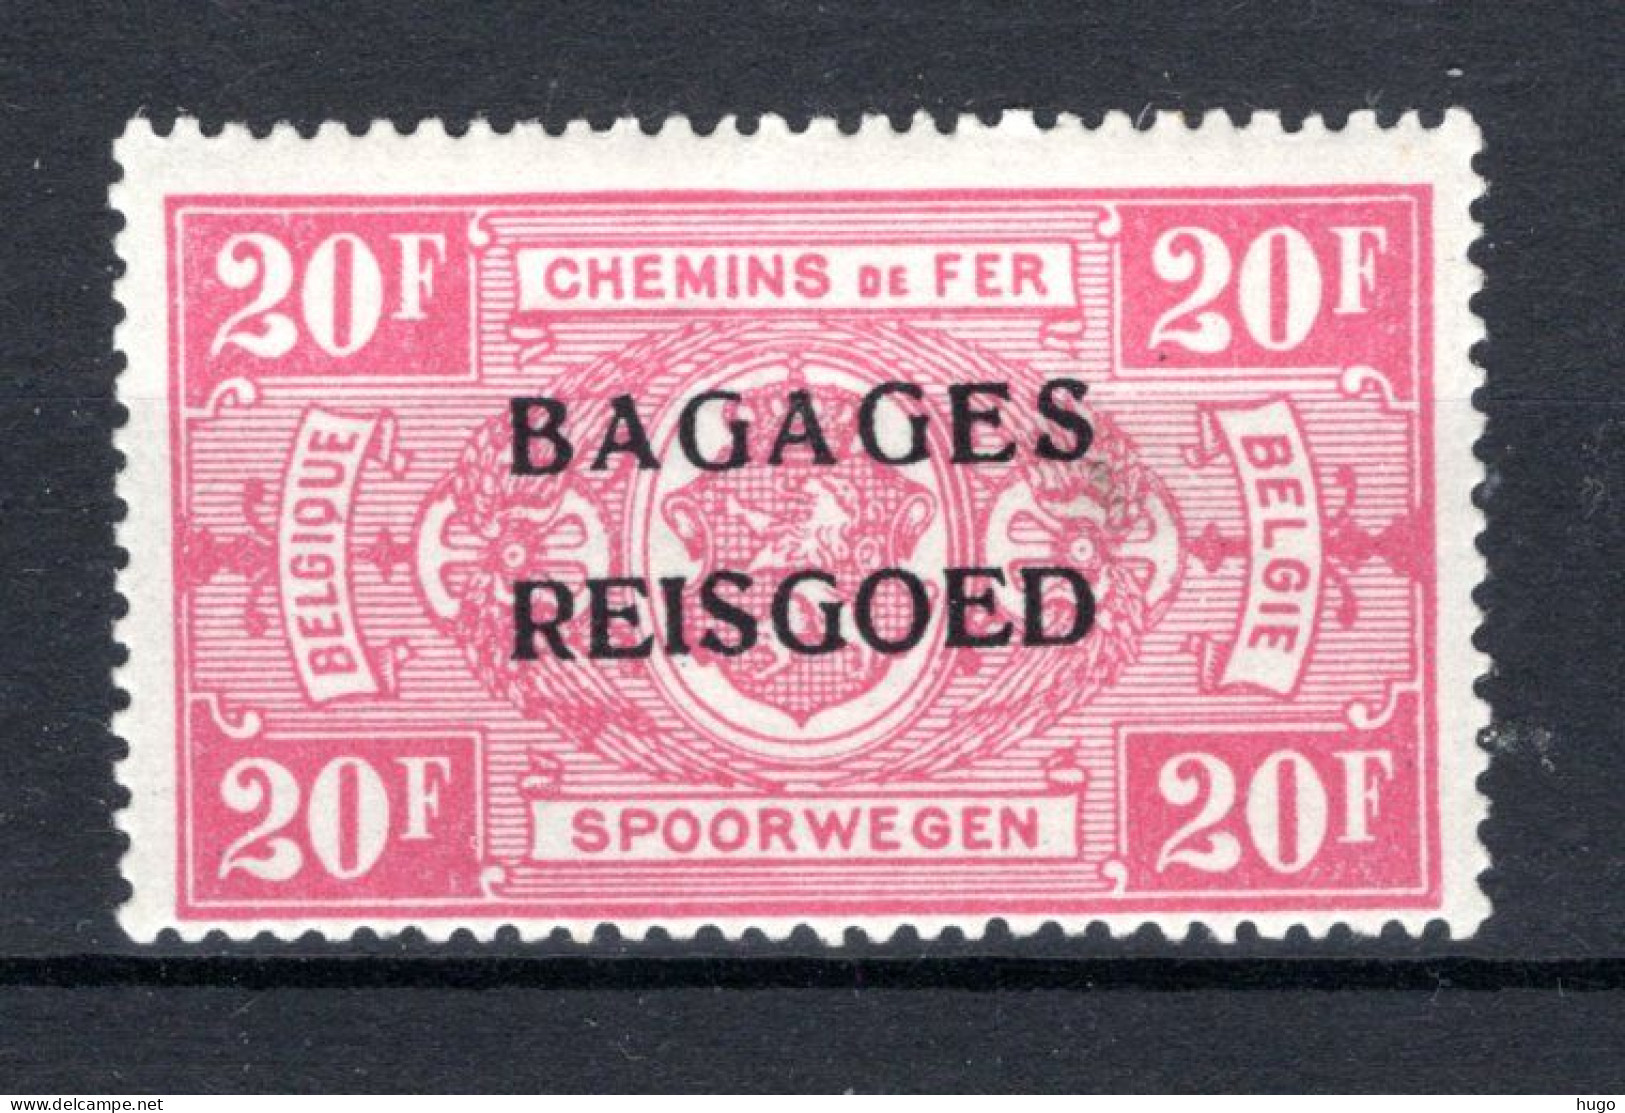 BA20 MNH 1935 - Spoorwegzegels Met Opdruk "BAGAGES - REISGOED"  - Gepäck [BA]